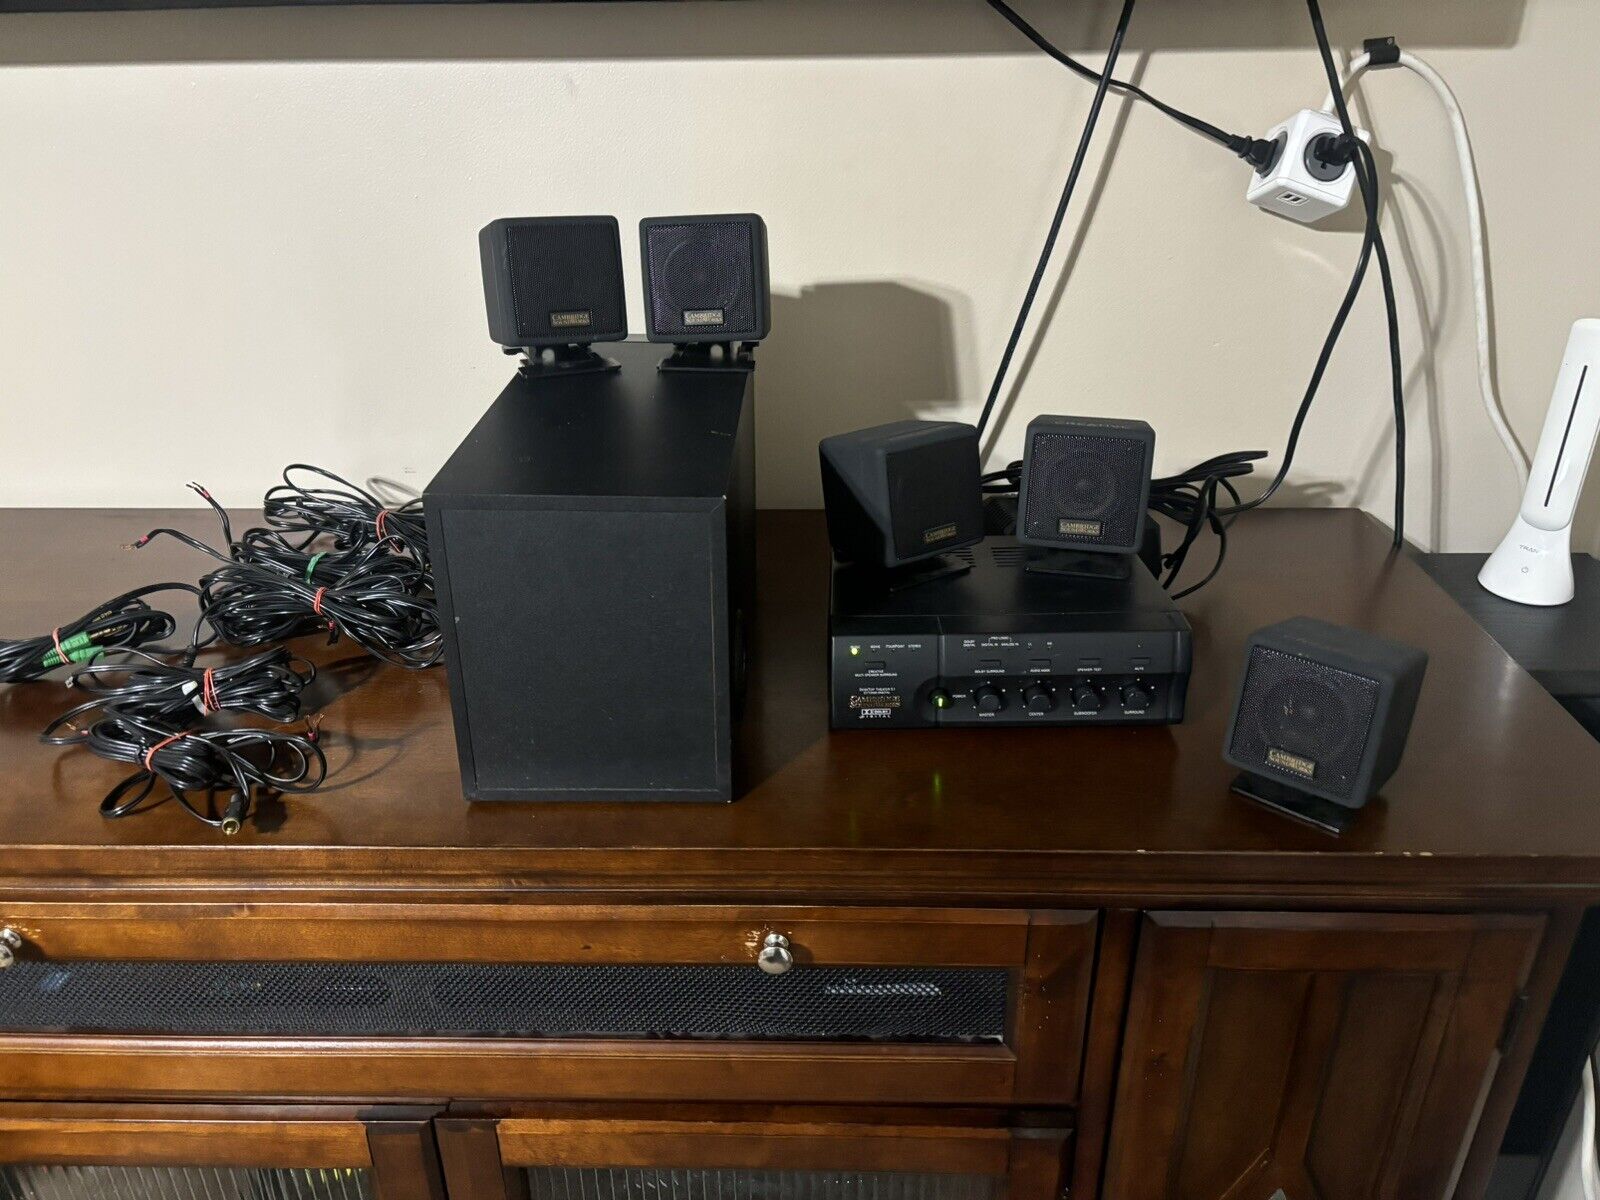 Cambridge SoundWorks DTT2200 5.1 Desktop Theatre PC Speaker Set Tested Works